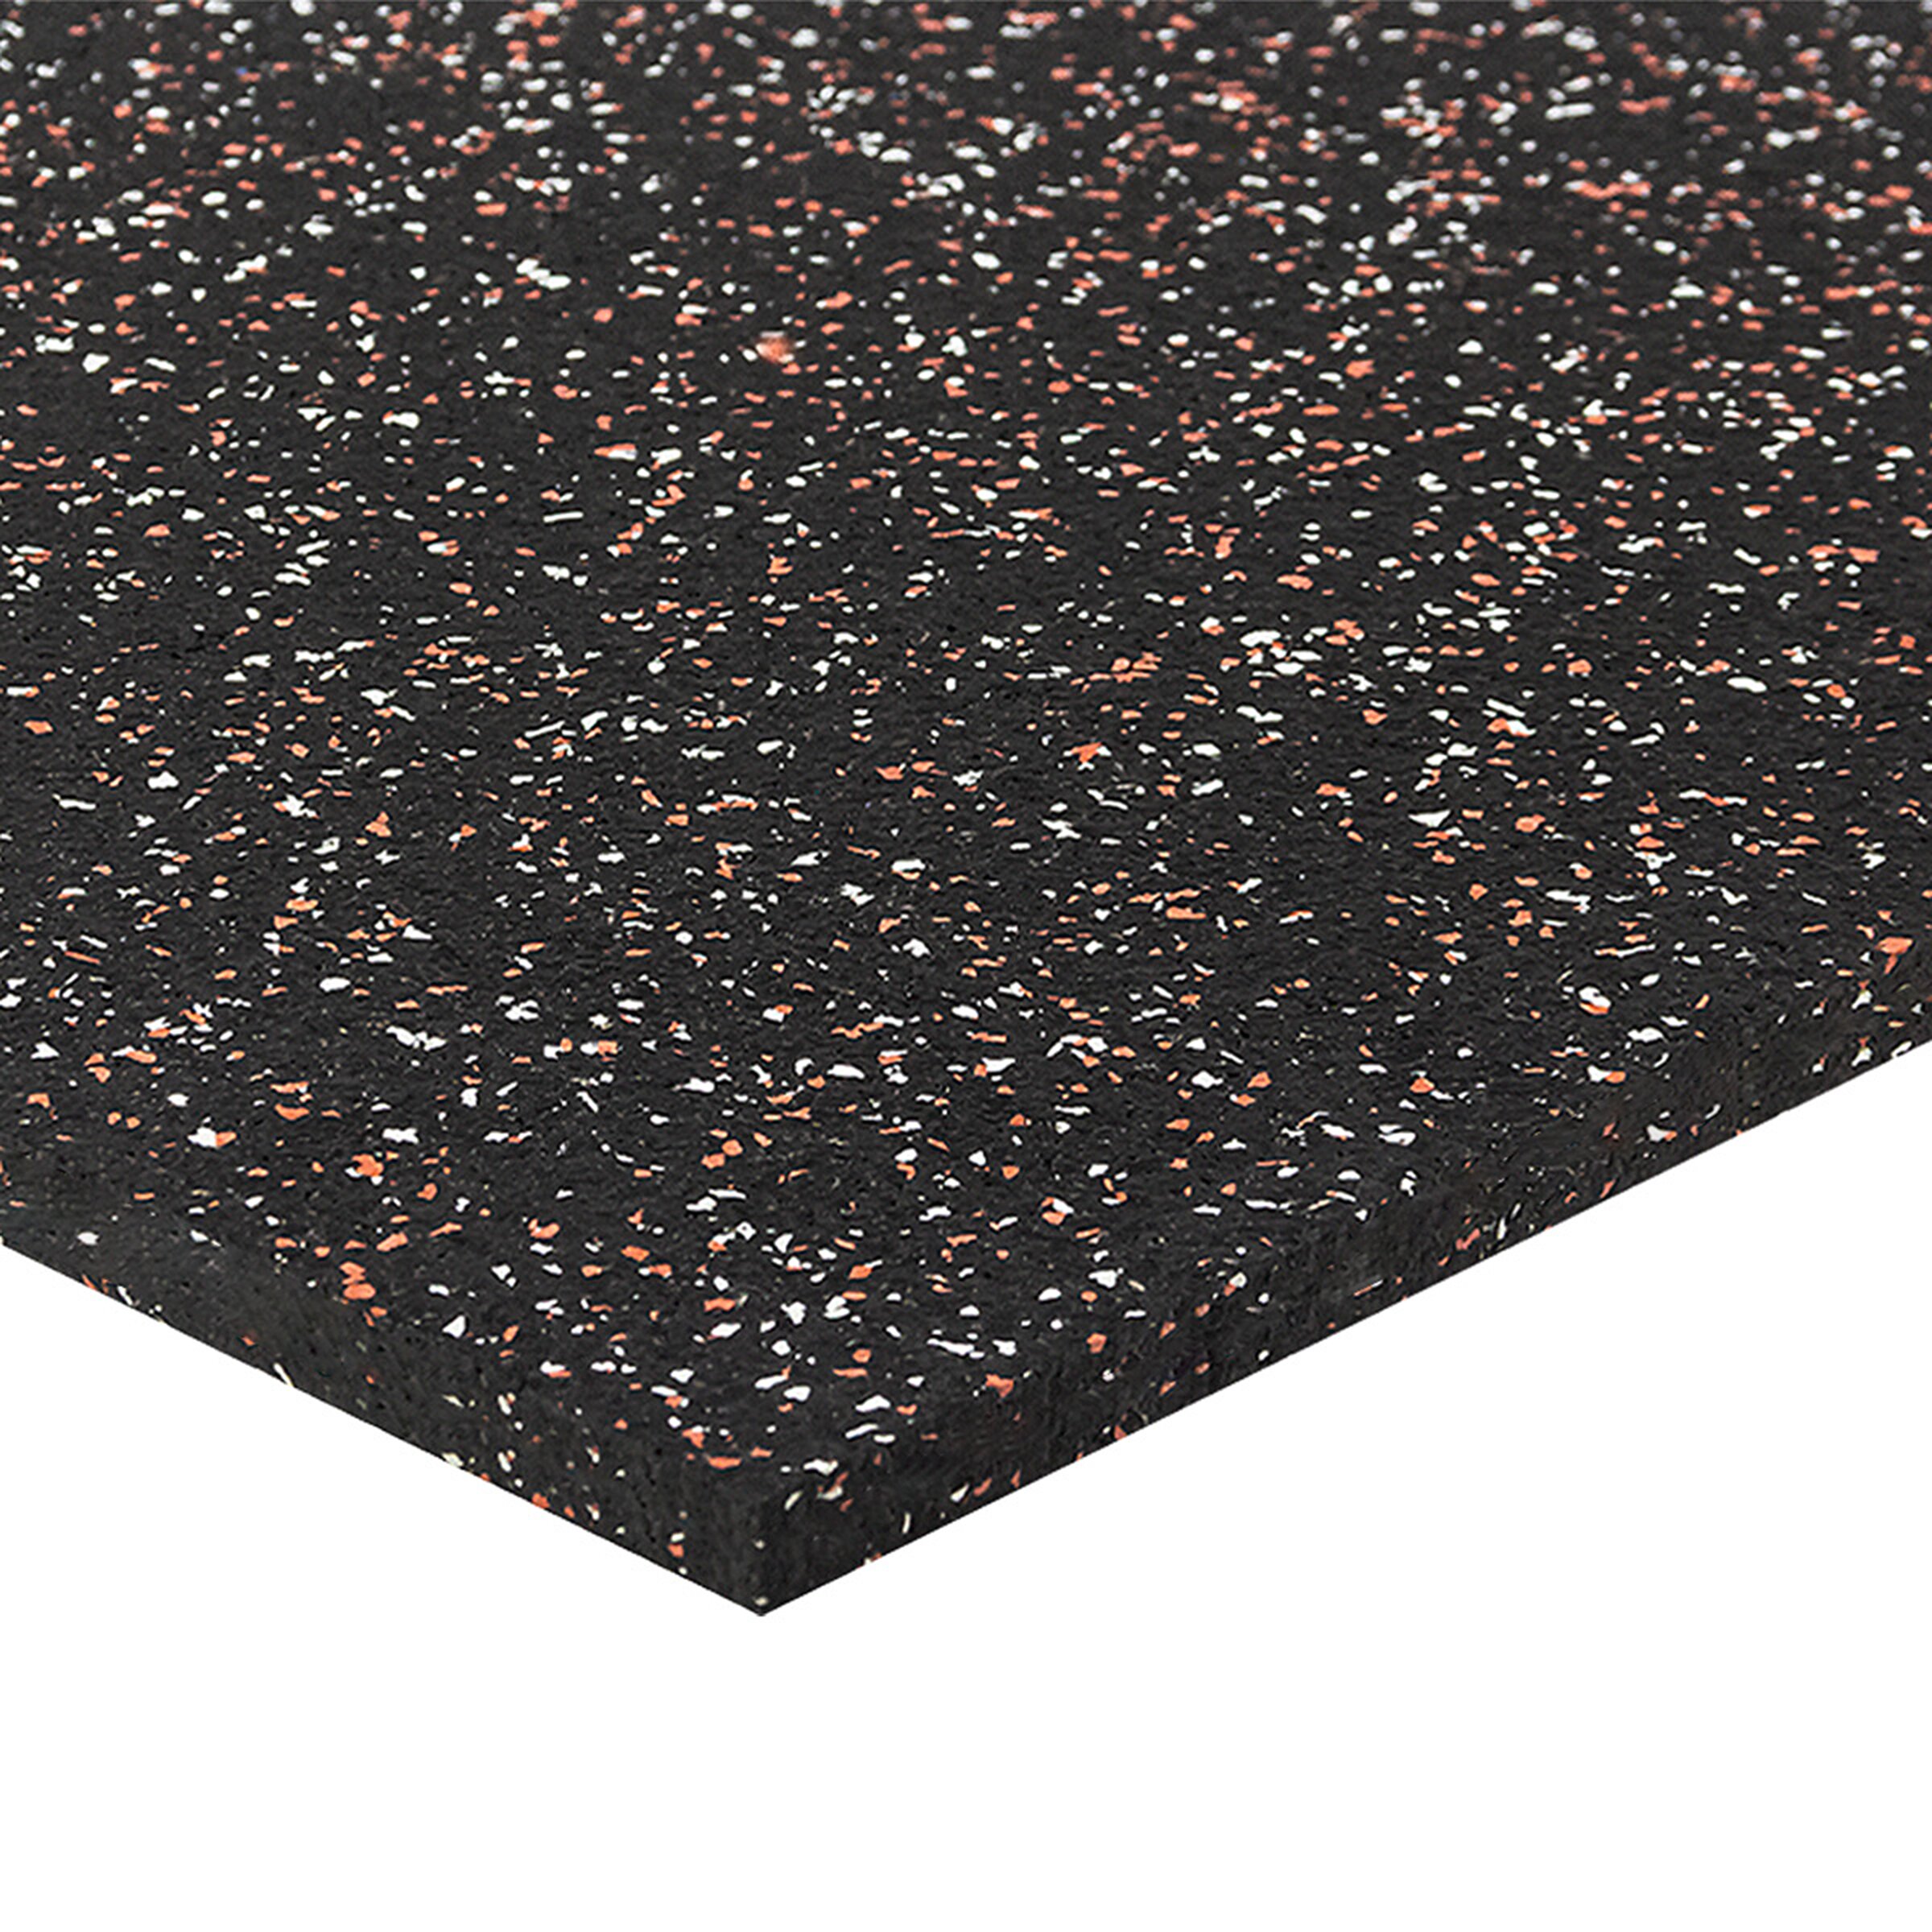 Čierno-bielo-červená podlahová guma (puzzle - stred) FLOMA FitFlo SF1050 - dĺžka 100 cm, šírka 100 cm, výška 1,6 cm